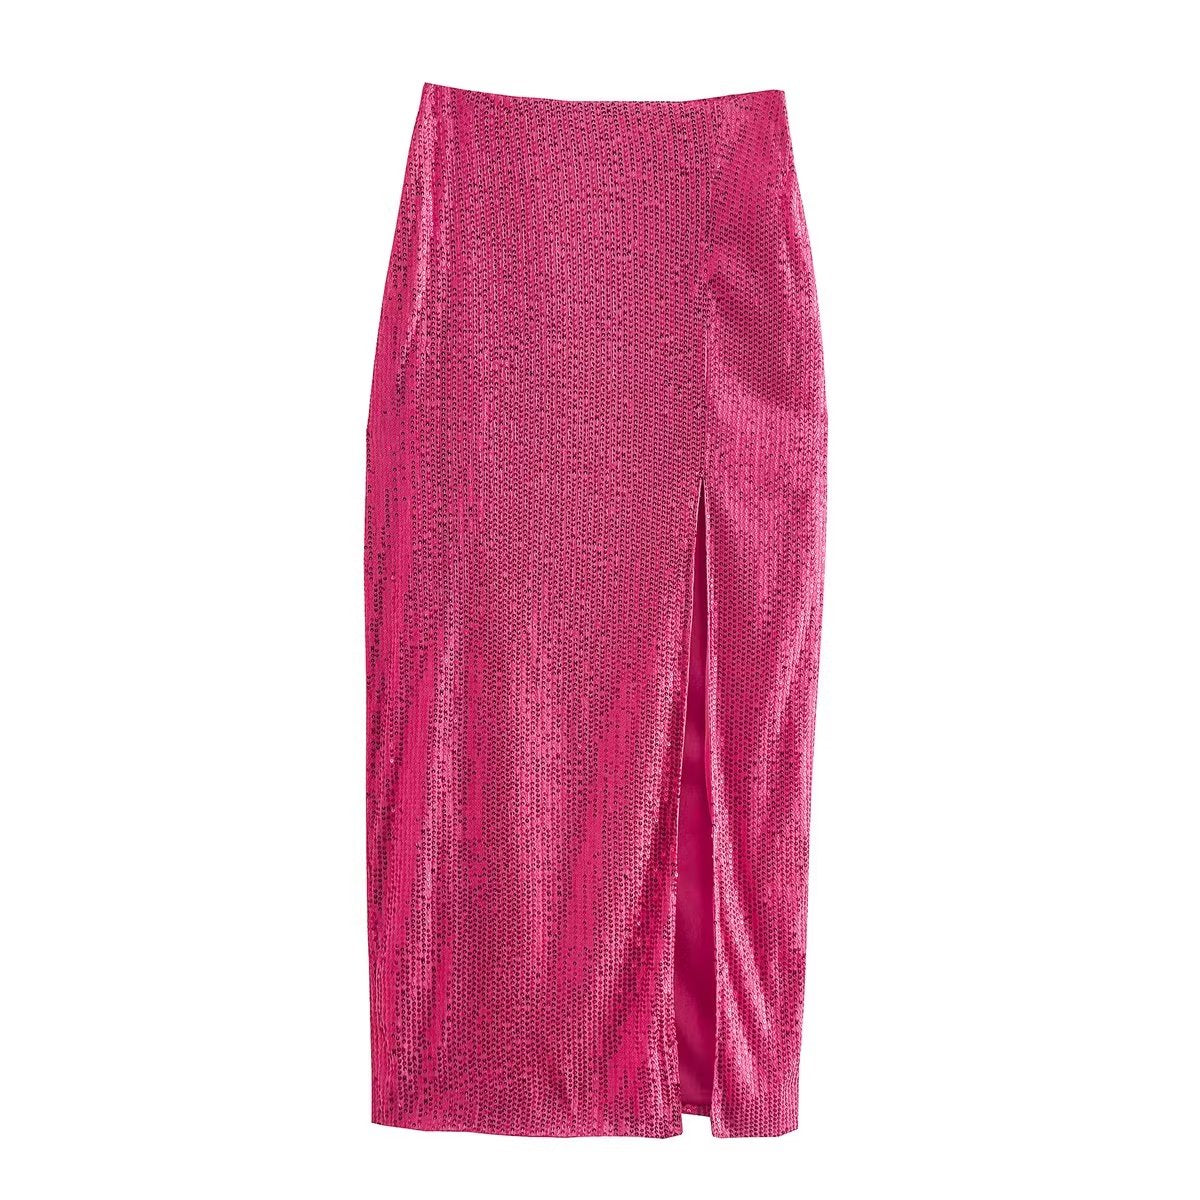 Rose Sequin Top Skirt Suit